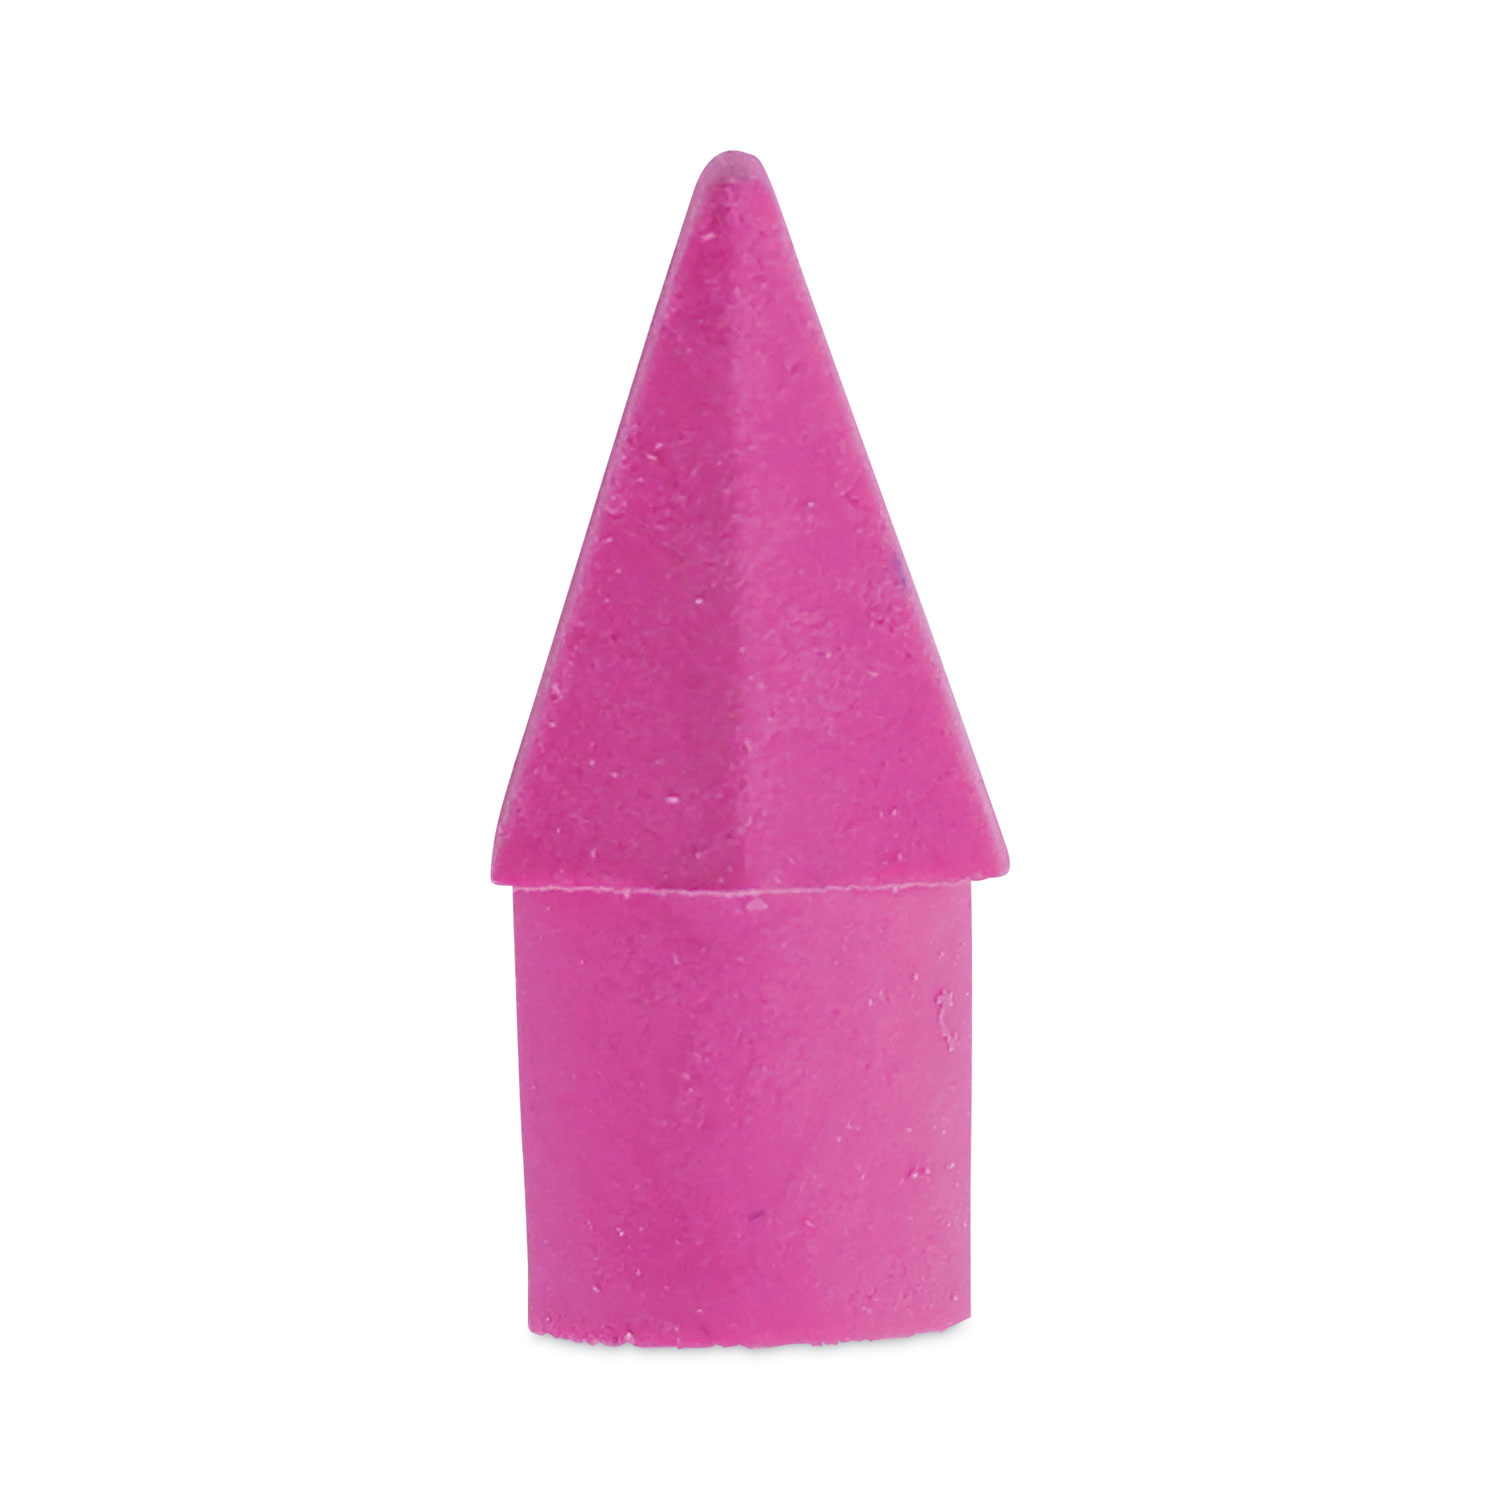 Pencil Cap Eraser - Ed Her Plastics